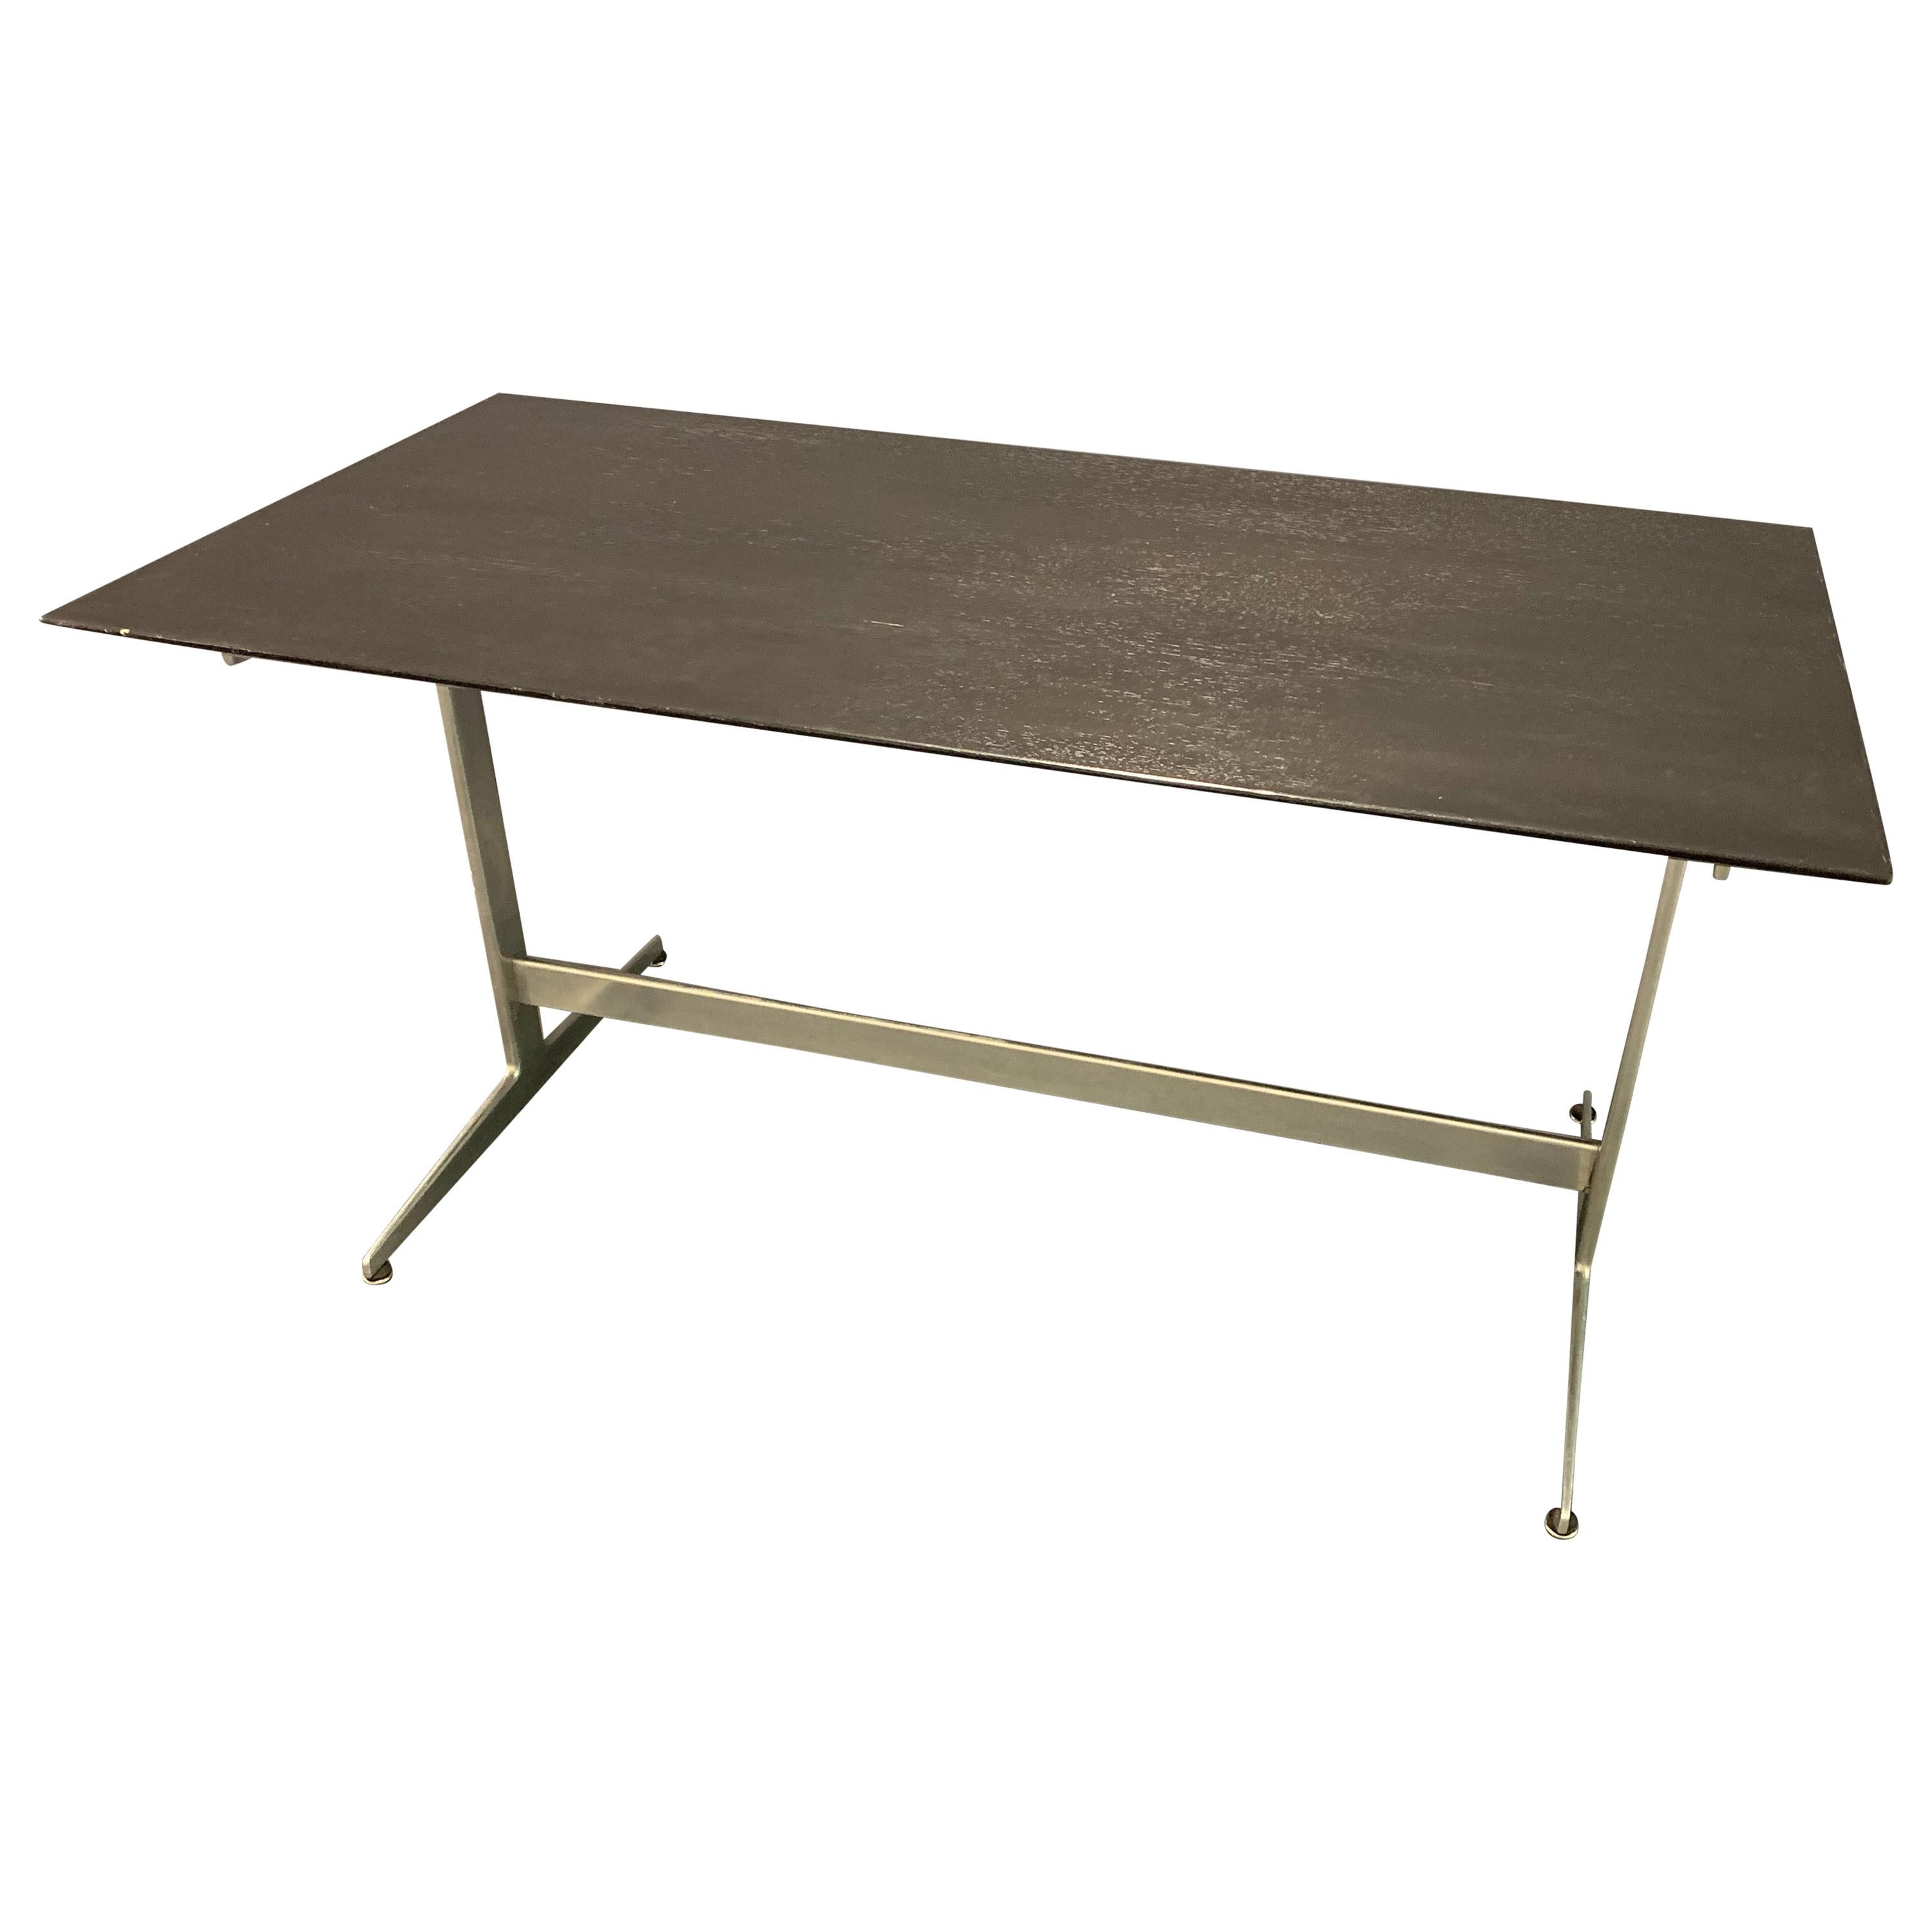 Arne Jacobsen Shaker Desk or Table 